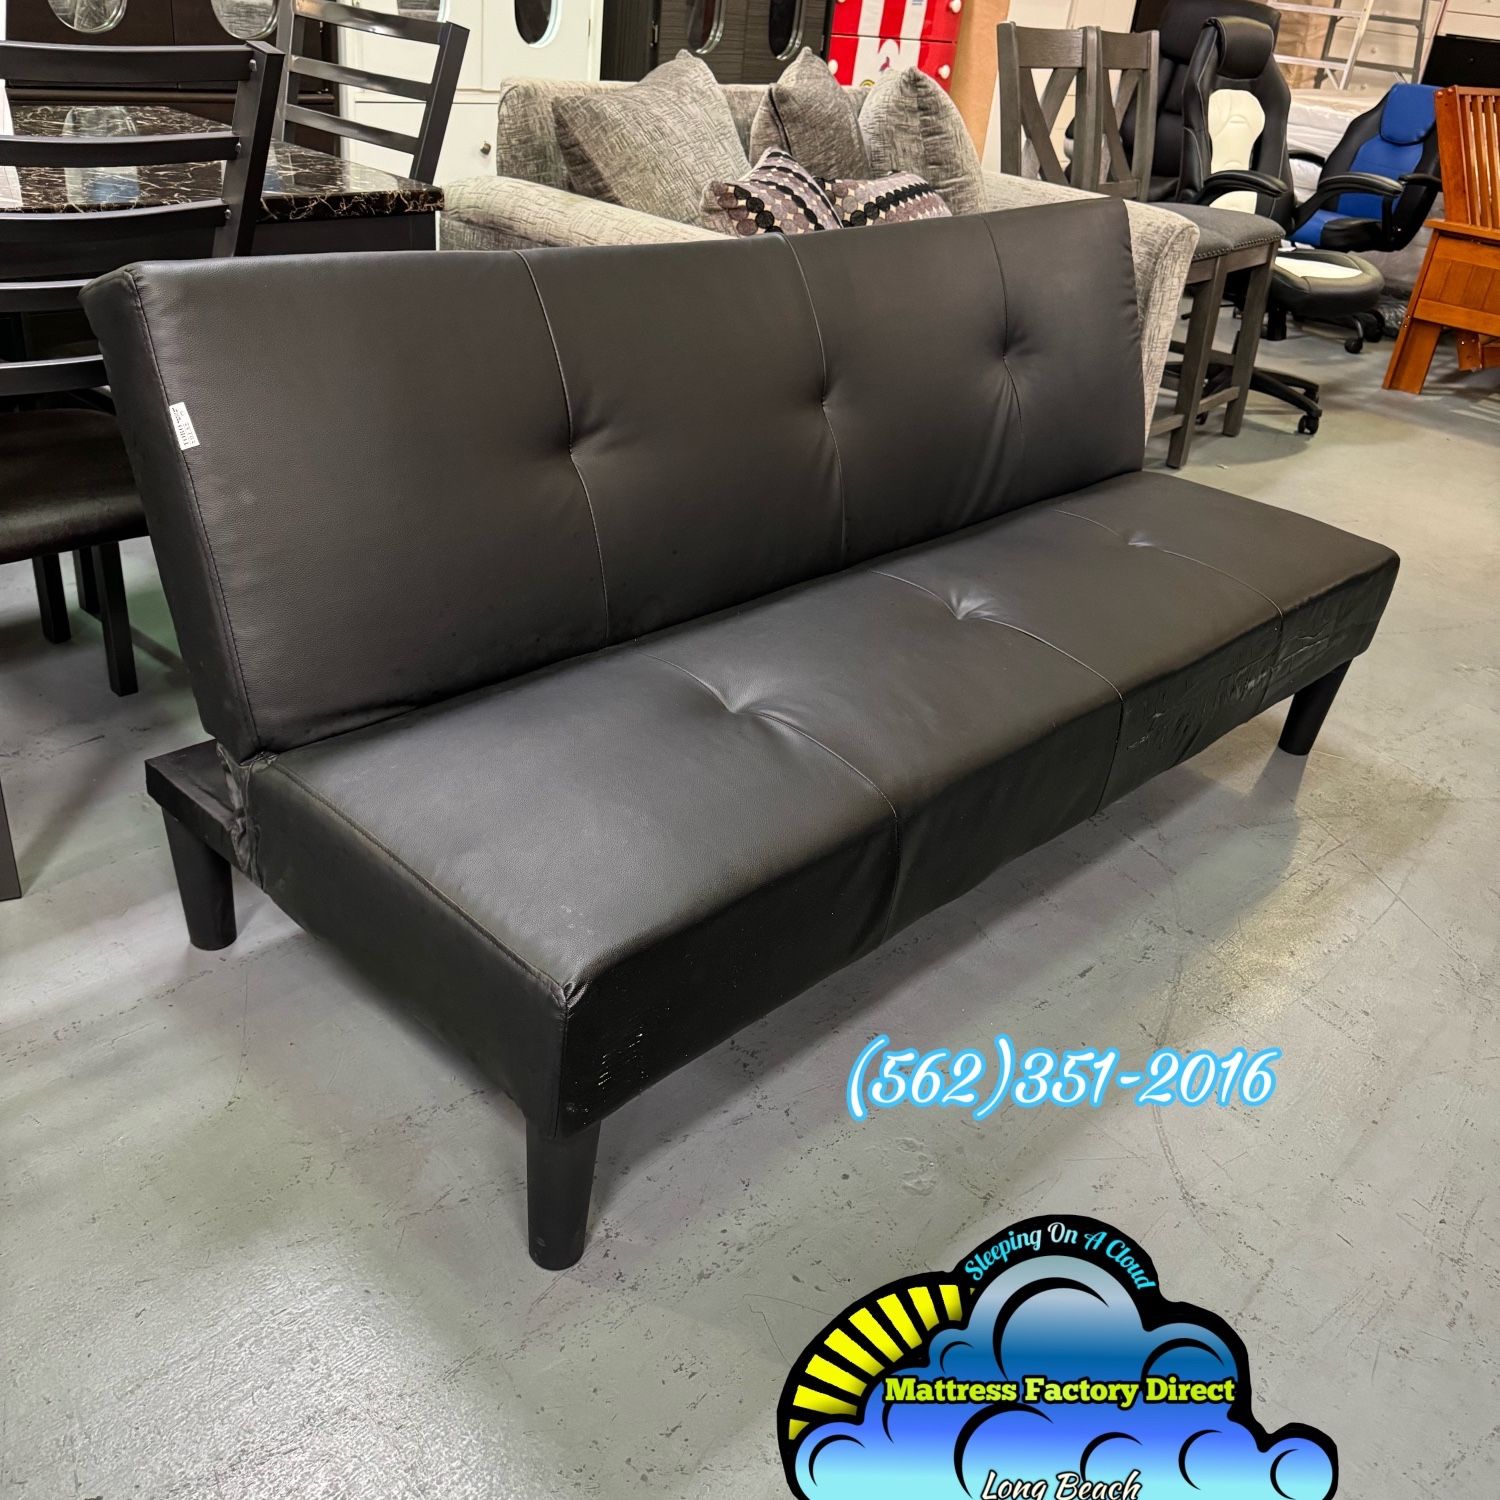 All New Black Leather Foldable Futon Sofa Cama 